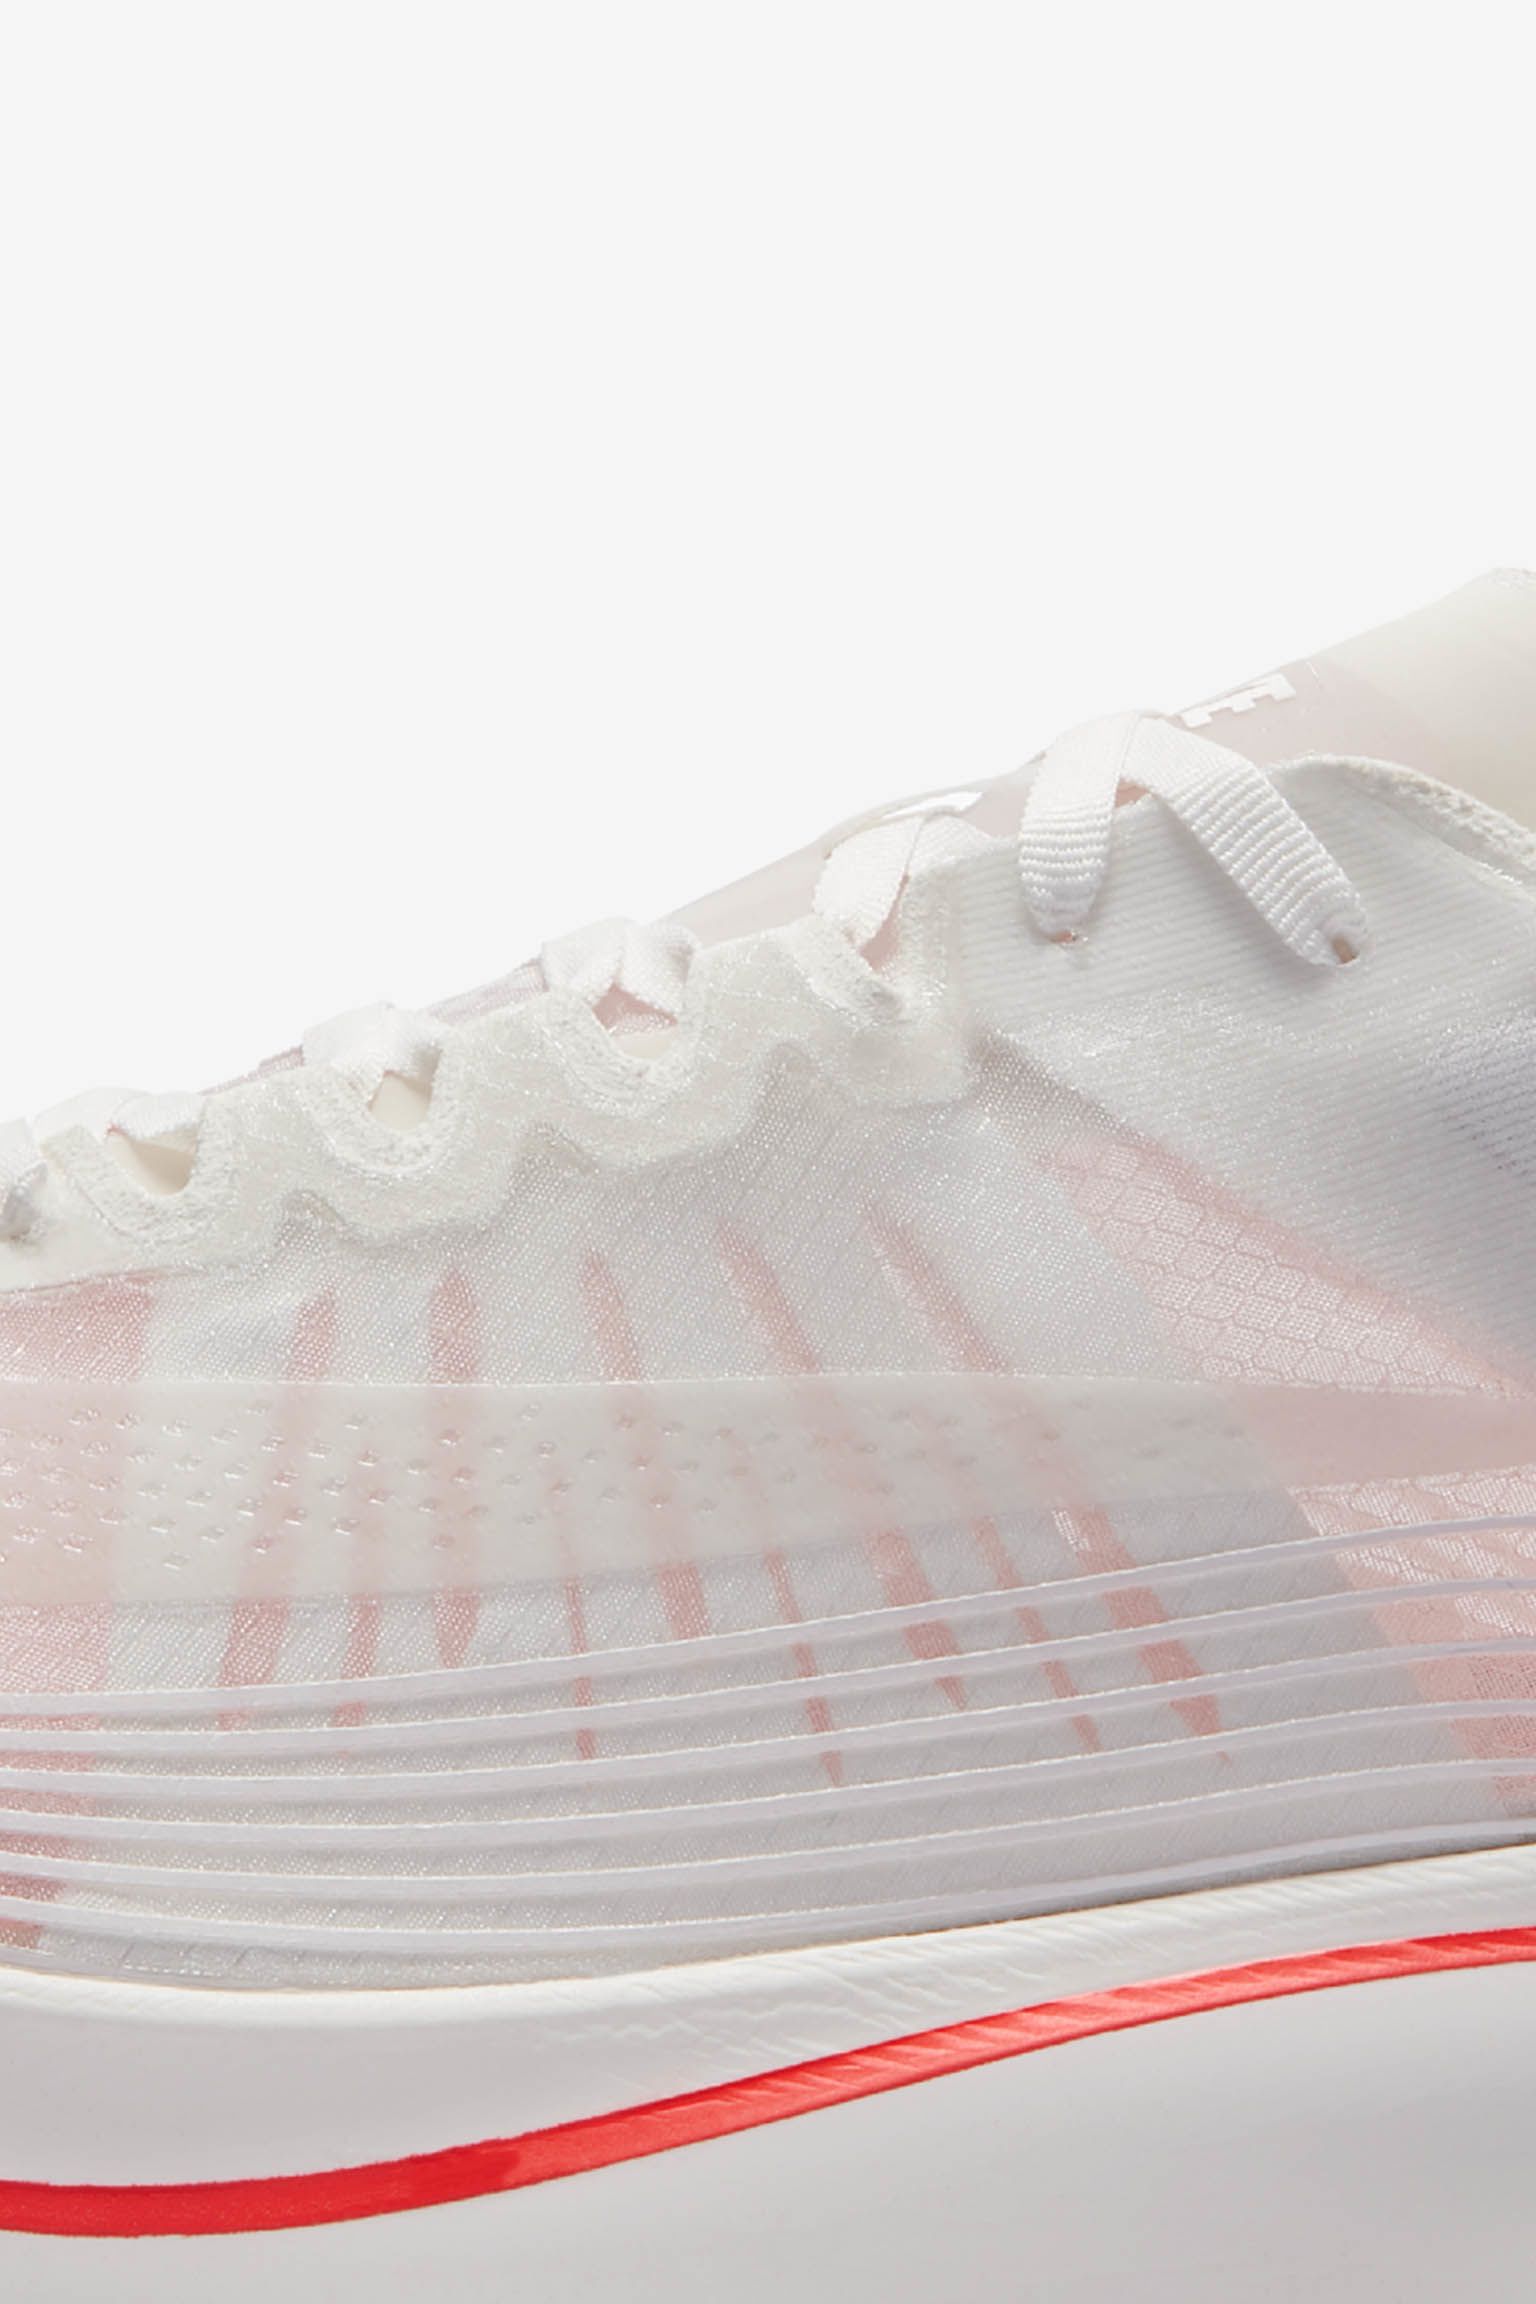 toeter methodologie Ijveraar Nike Zoom Fly SP 'White & Bright Crimson' Release Date. Nike SNKRS